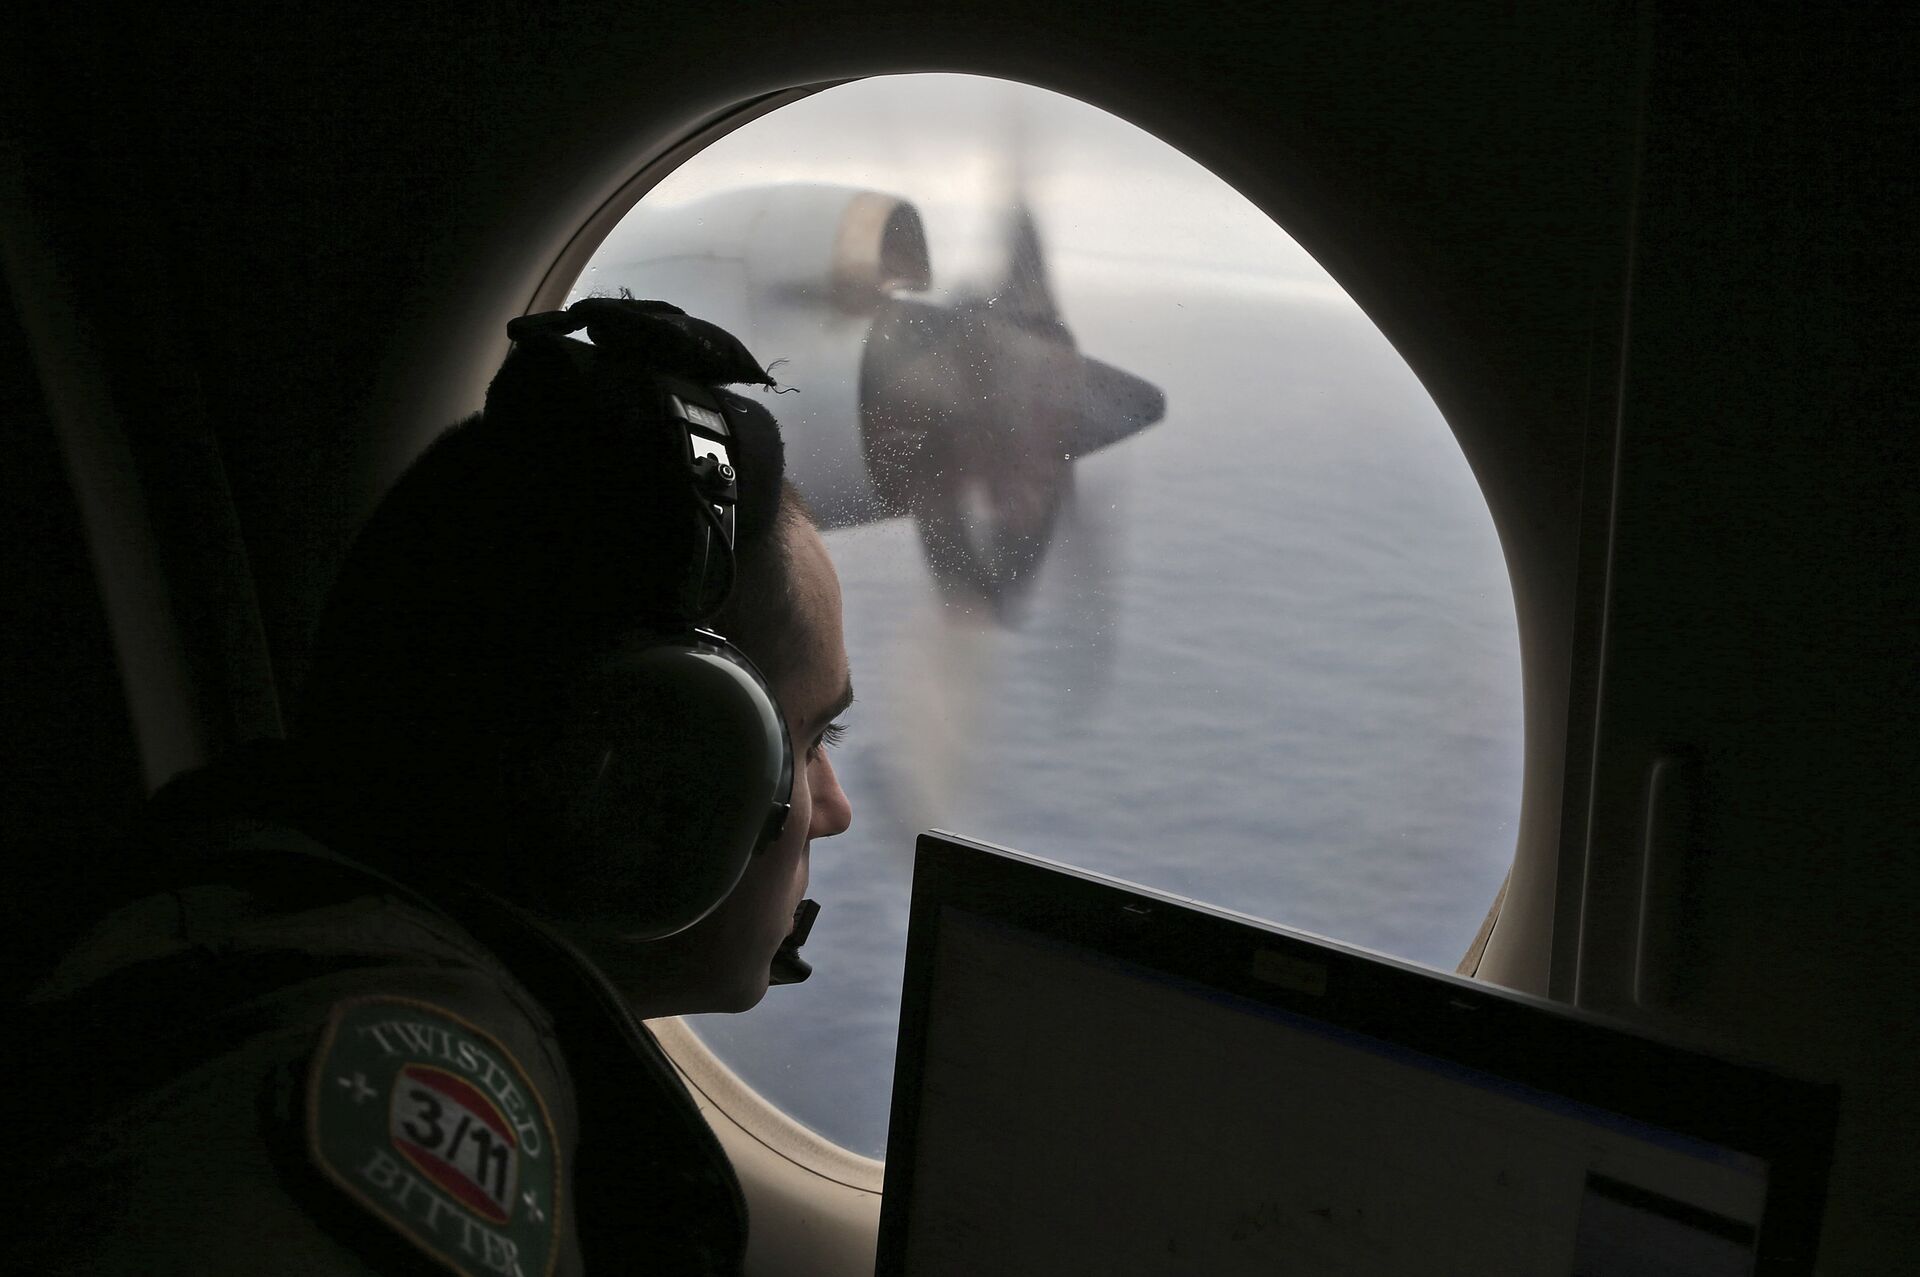 Capitão do voo MH370 evitou radares para provocar de propósito queda do avião, afirma tabloide - Sputnik Brasil, 1920, 07.05.2021